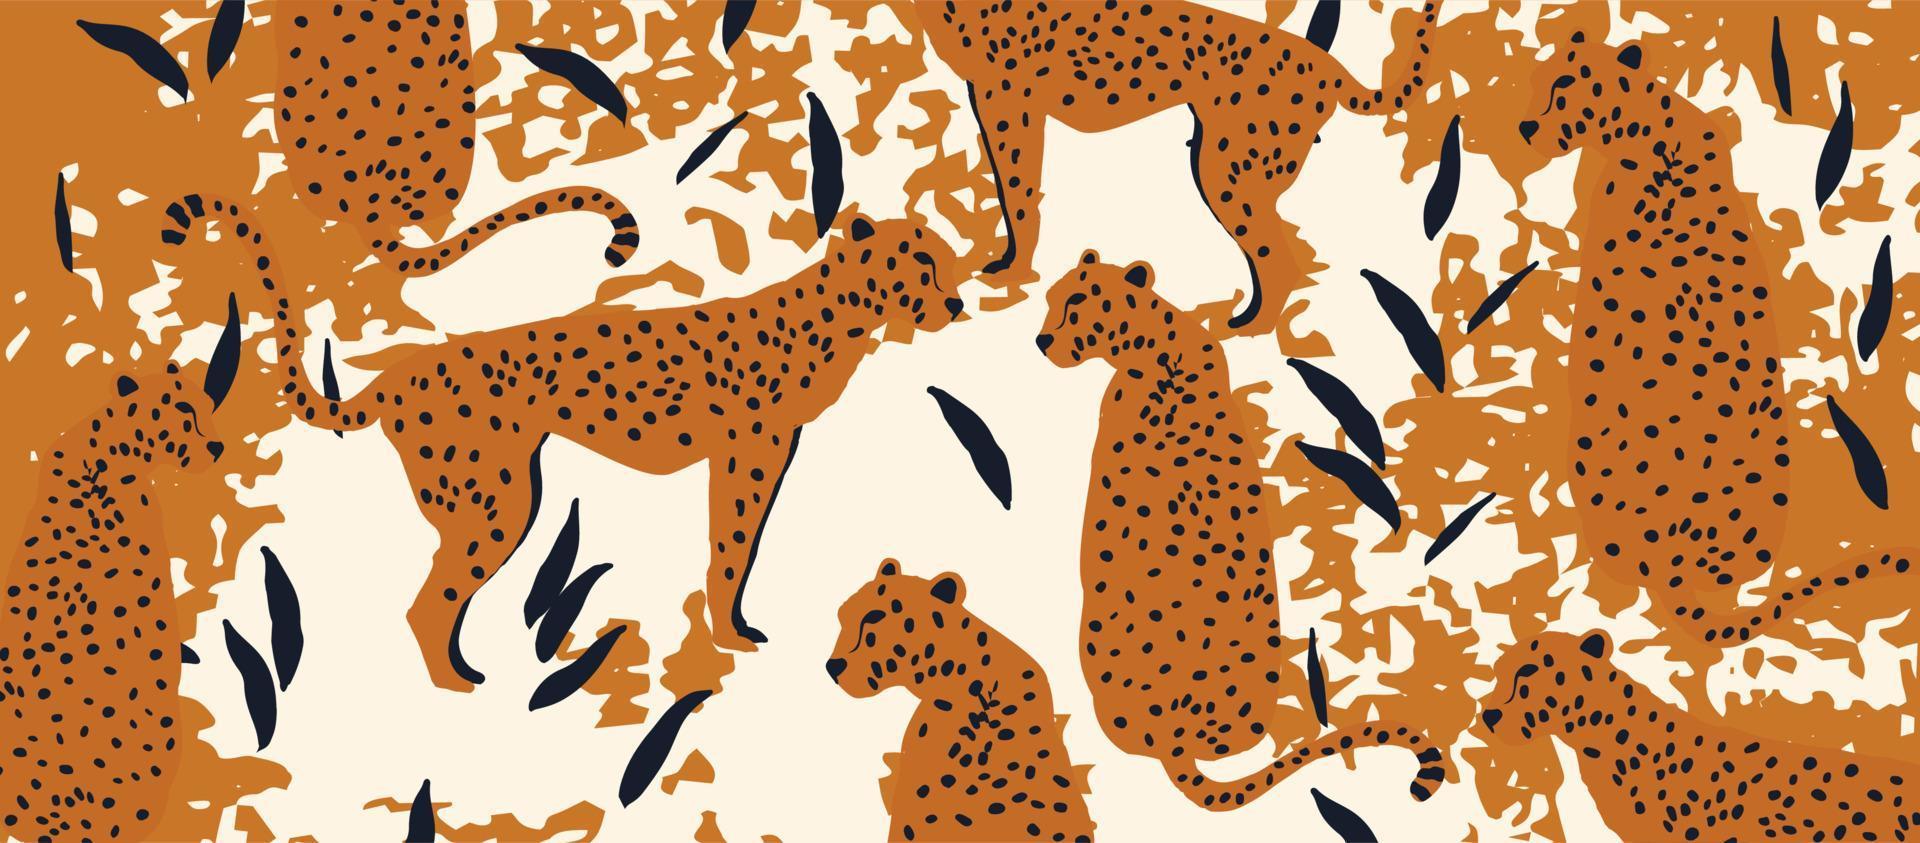 padrão de vida selvagem moderno e moderno com leopardos. design de ilustração vetorial de leopardos e folhas vetor